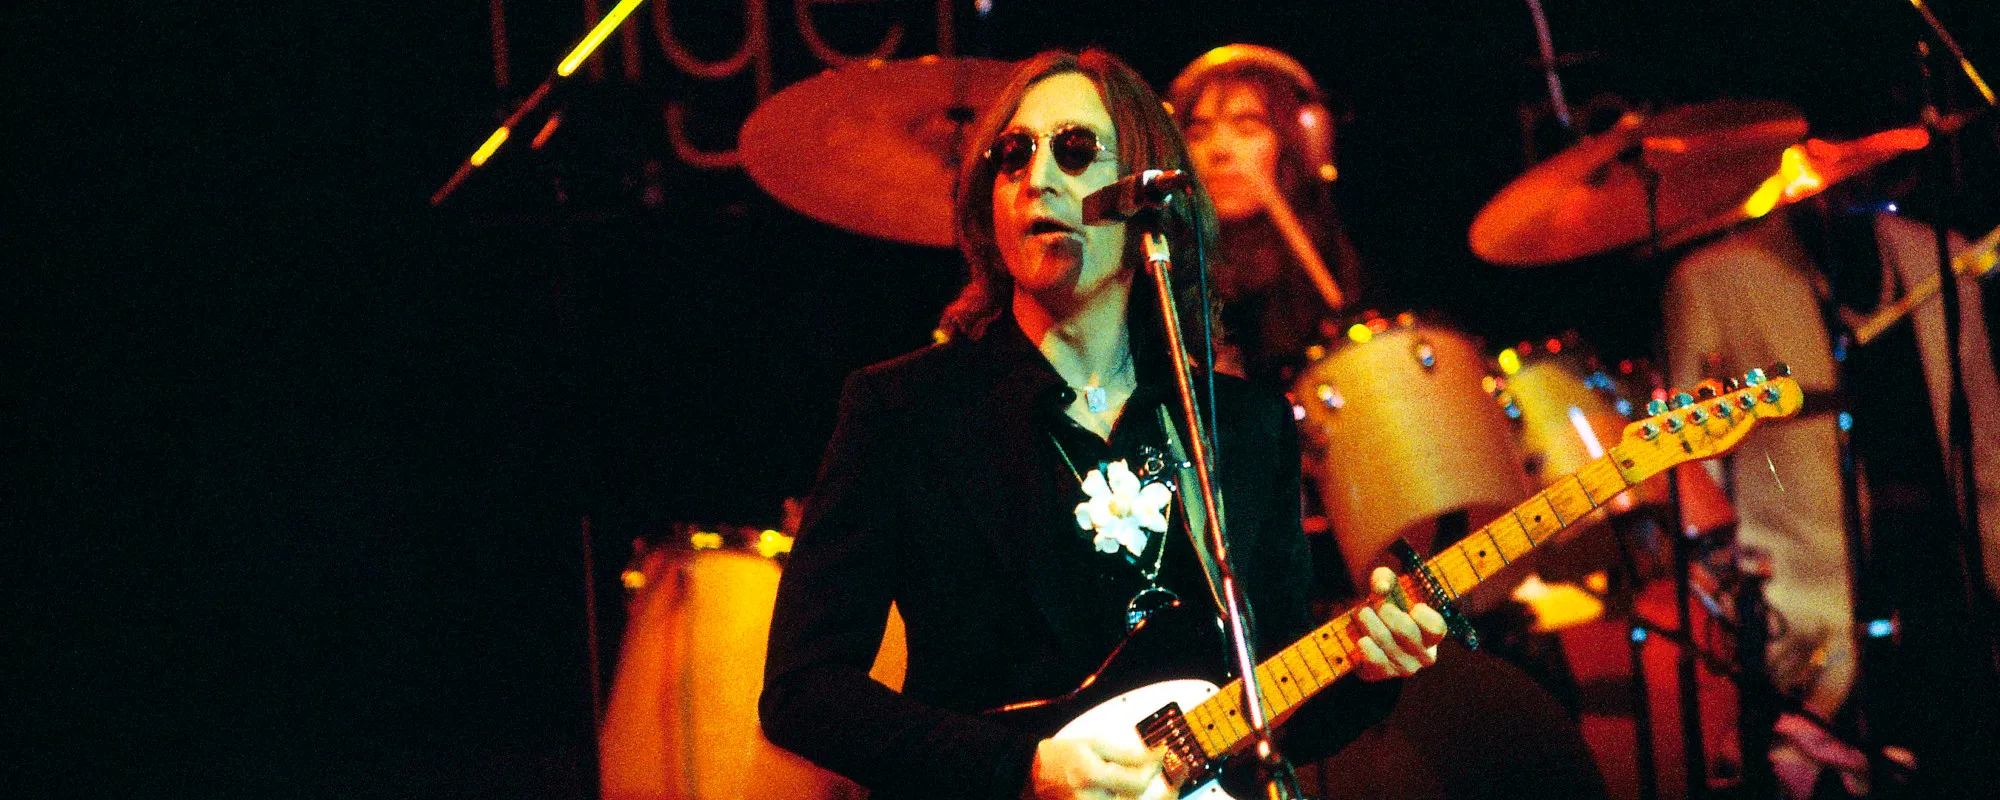 Remember When: John Lennon Returned to Pop with the ‘Imagine’ Album